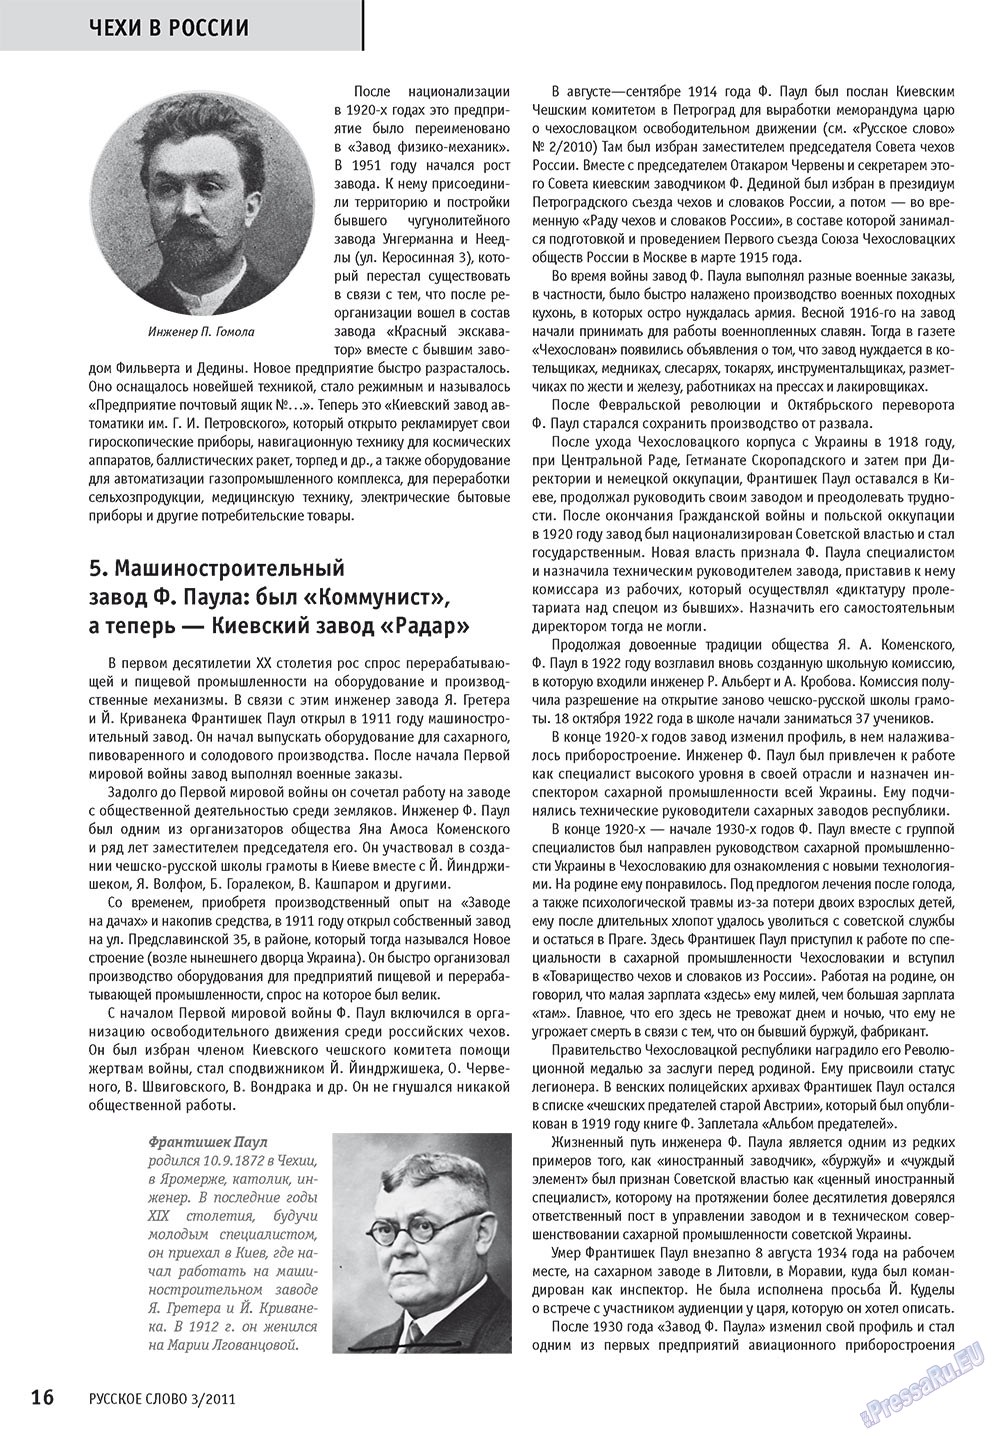 Русское слово, журнал. 2011 №3 стр.18